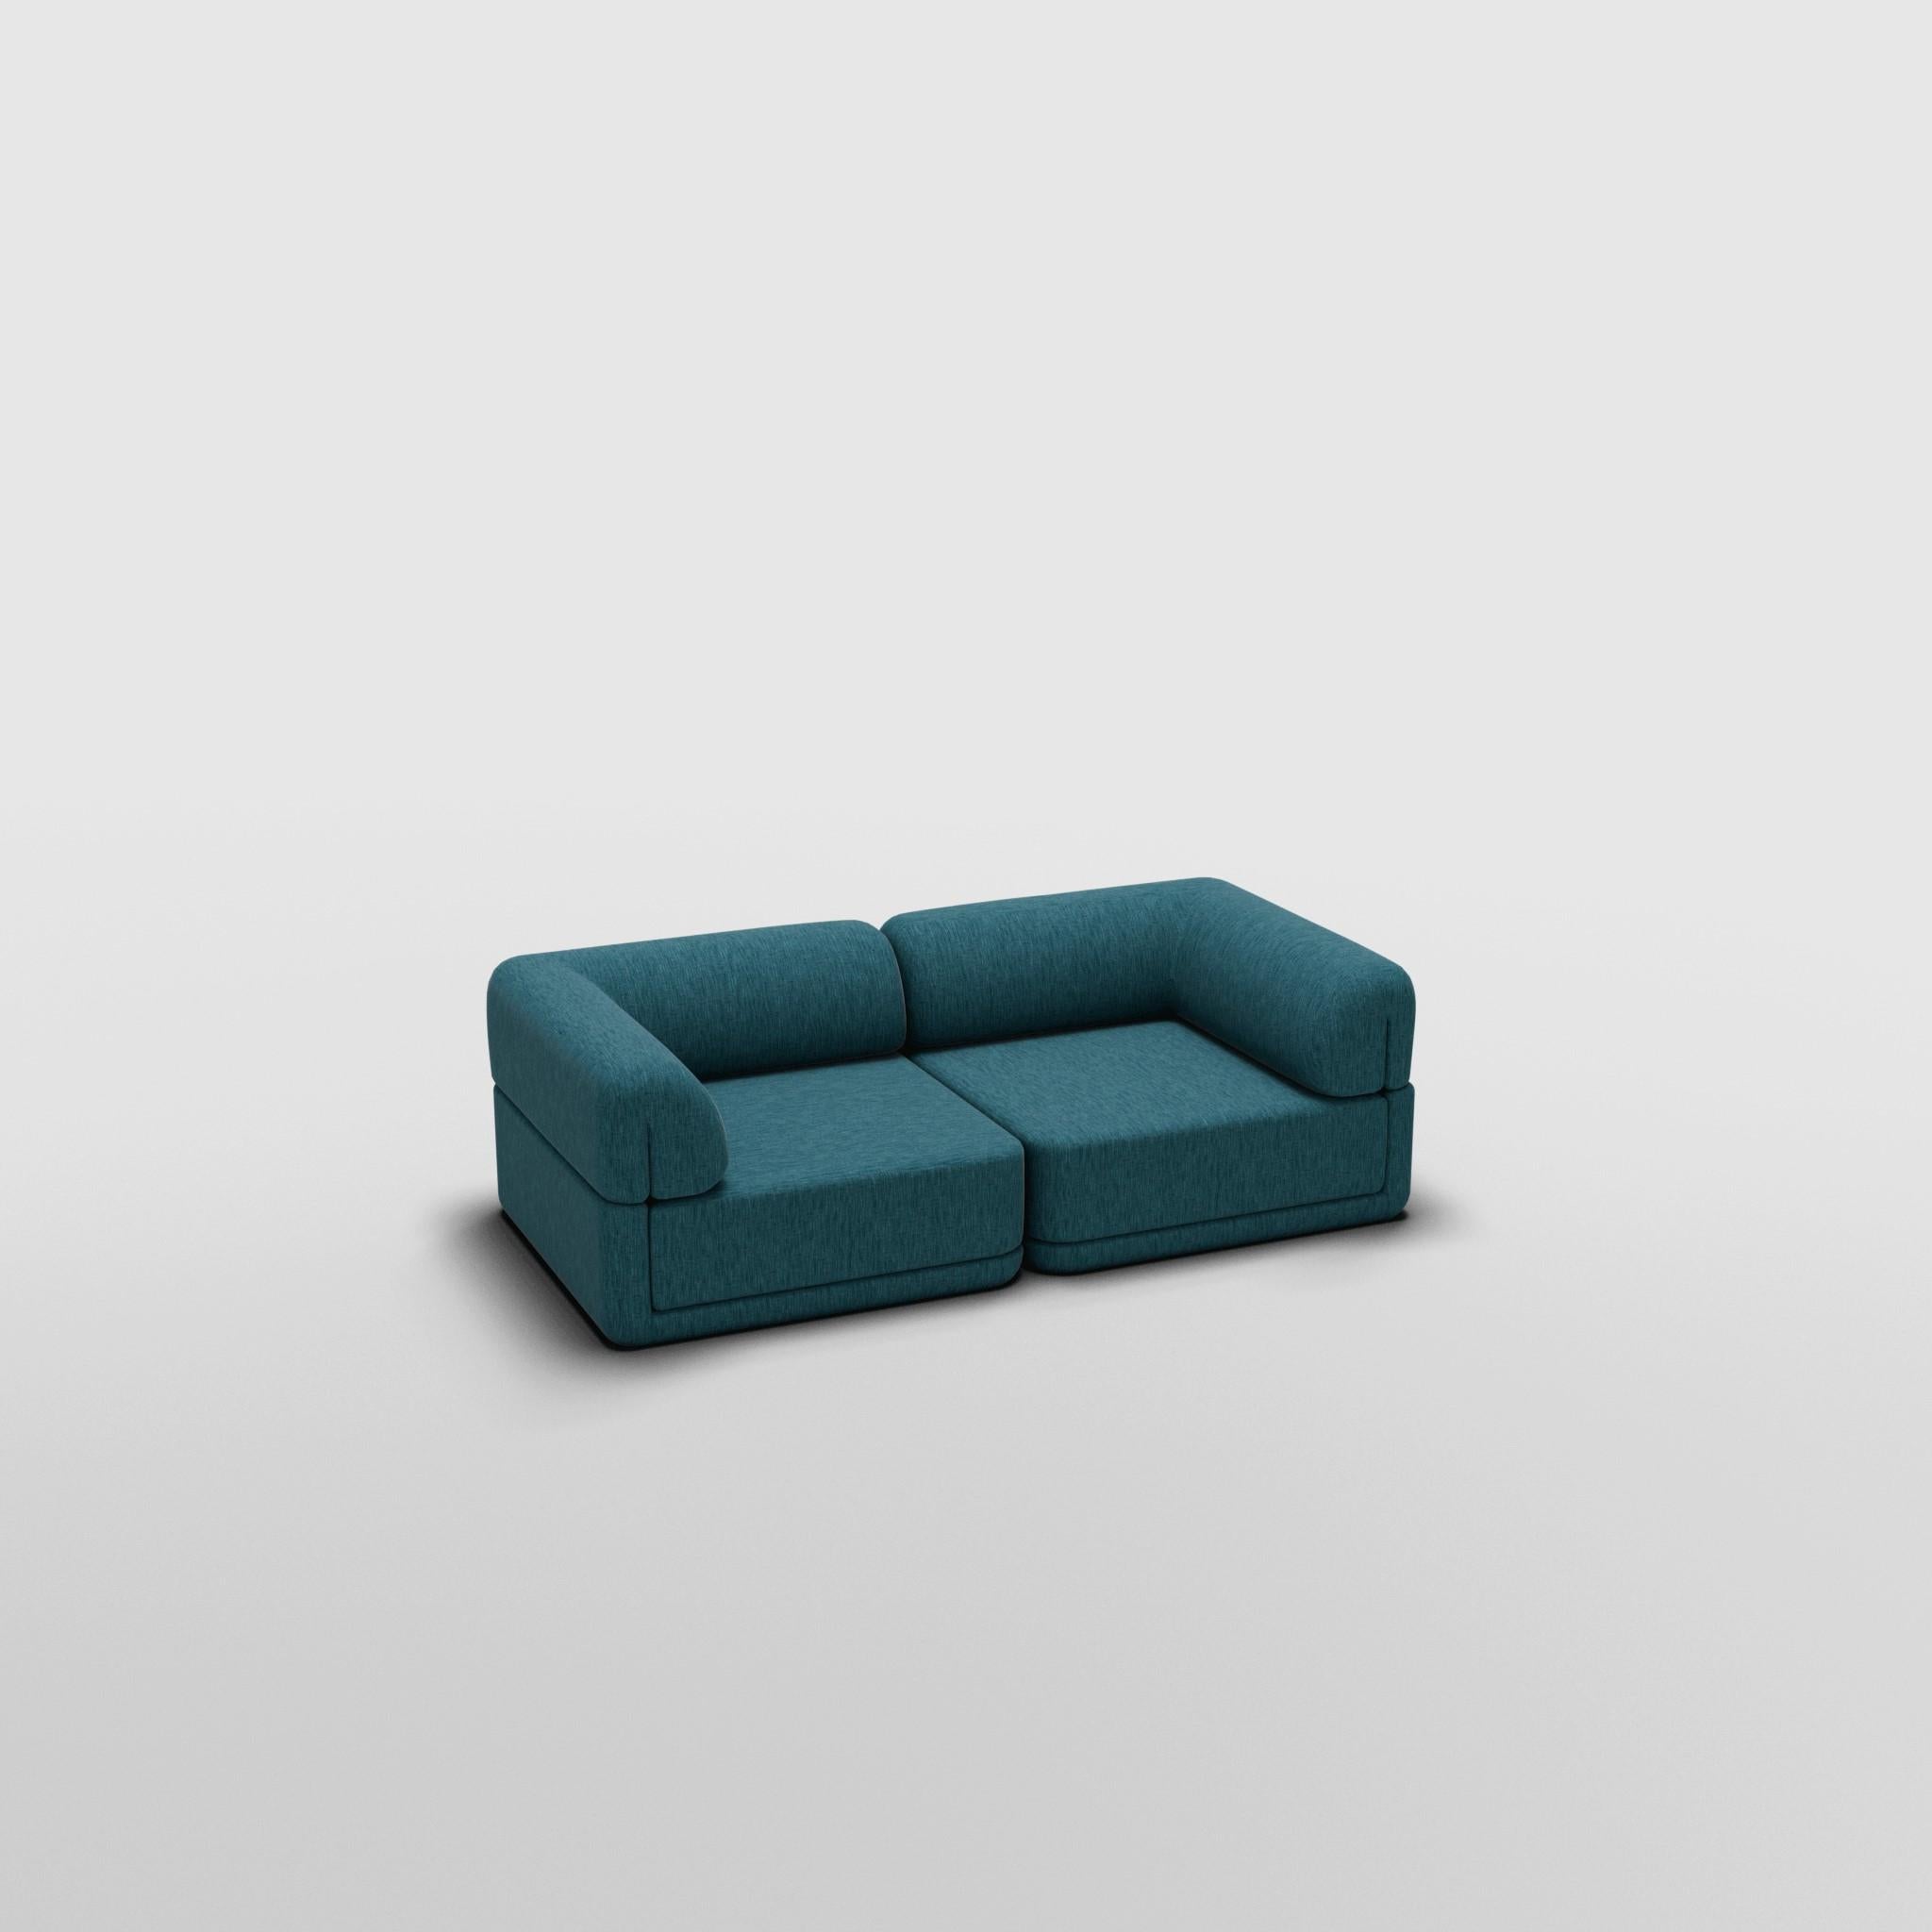 Salon d'angle - Inspiré par les meubles de luxe italiens des années 70

Découvrez le canapé Cube, où l'art rencontre l'adaptabilité. Son design sculptural et son confort personnalisable créent des possibilités infinies pour votre espace de vie.